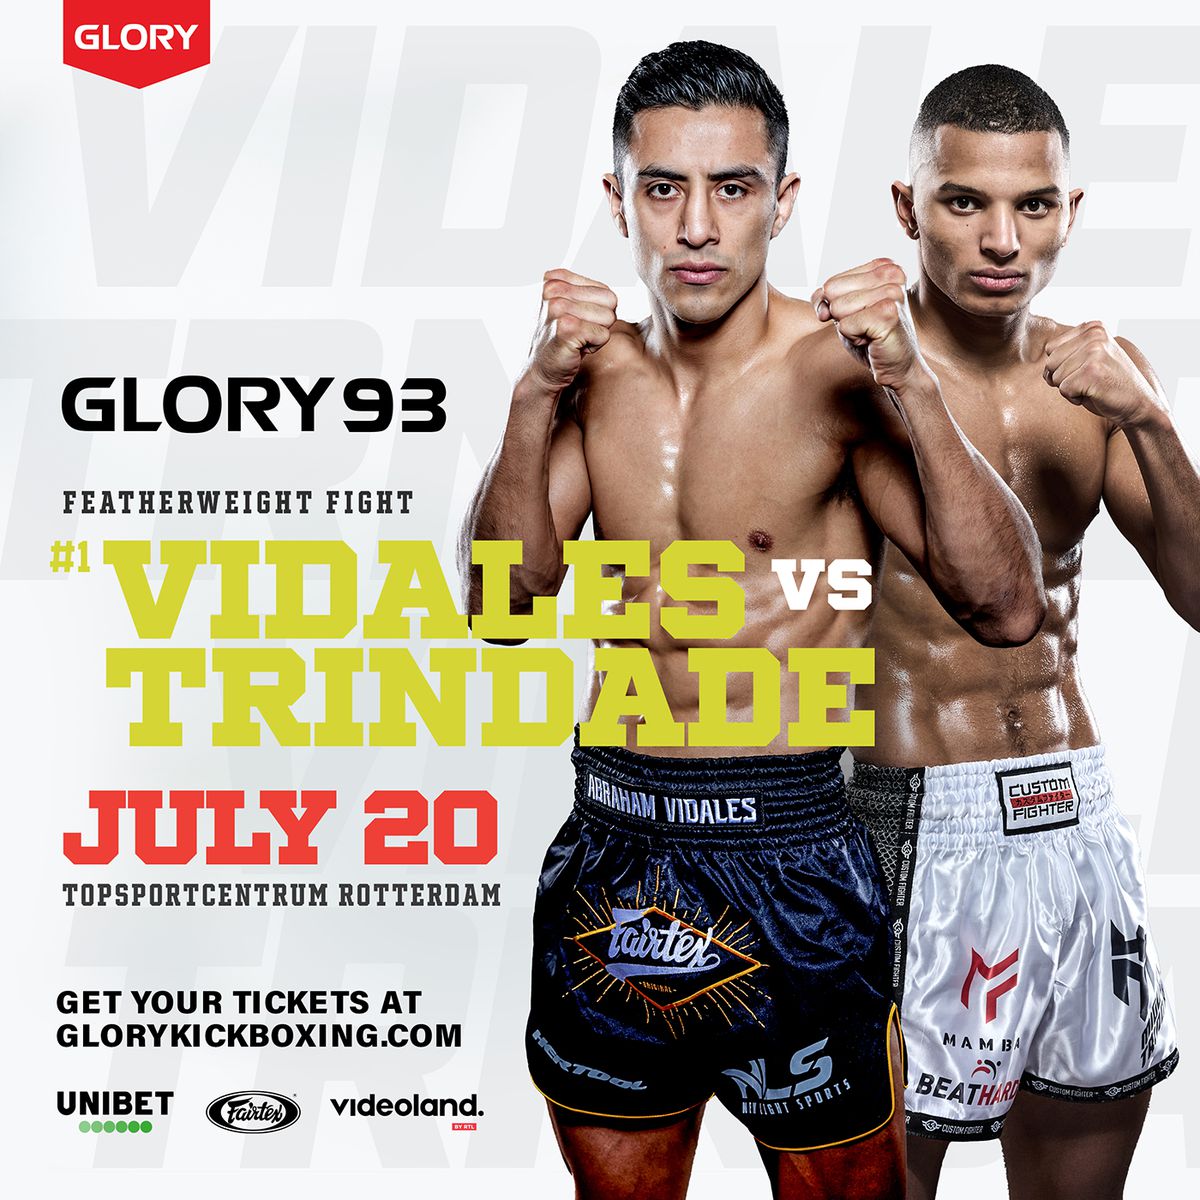 Klapper van gevecht bij Glory 93: nummer één contender Abraham Vidales tegen recente debutant